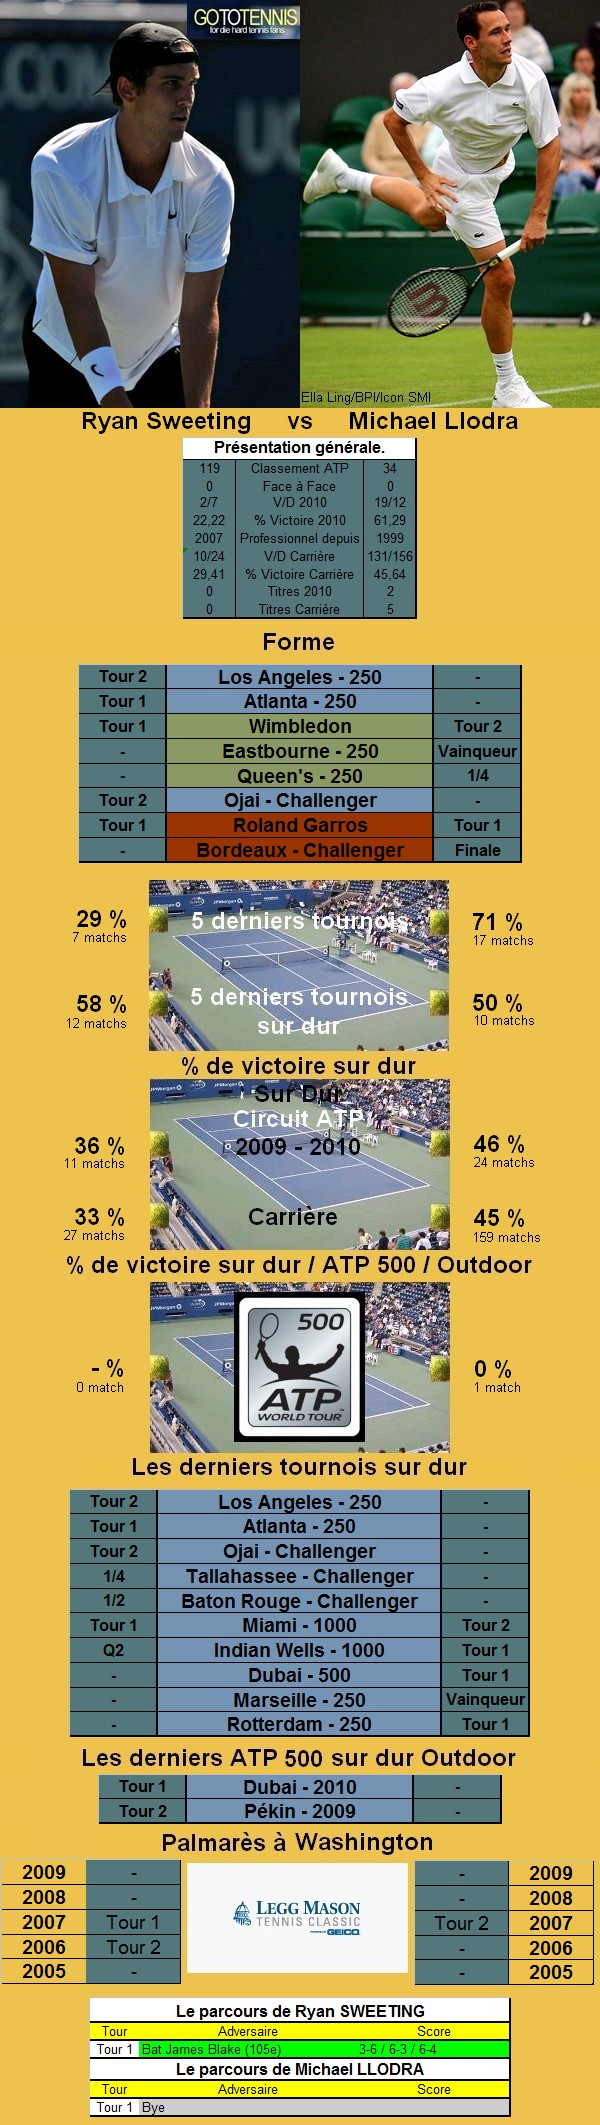 Statistiques tennis de Sweeting contre Llodra à Washington